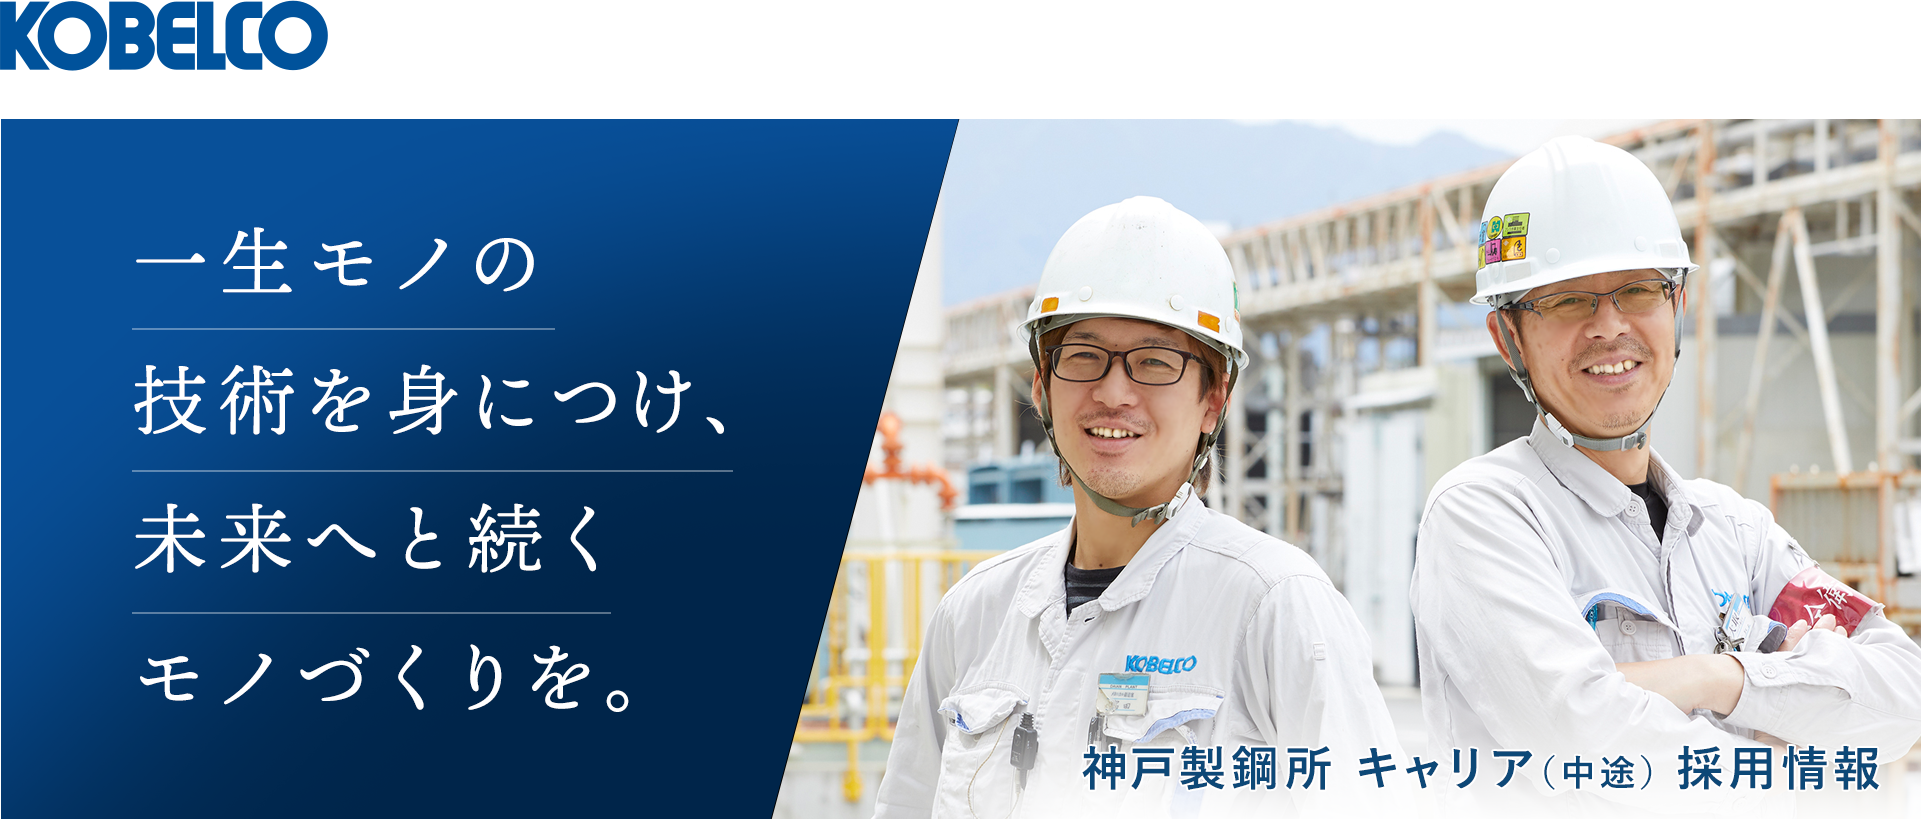 一生モノの技術を身につけ、未来へと続くモノづくりを。／神戸製鋼所 キャリア（中途）採用情報